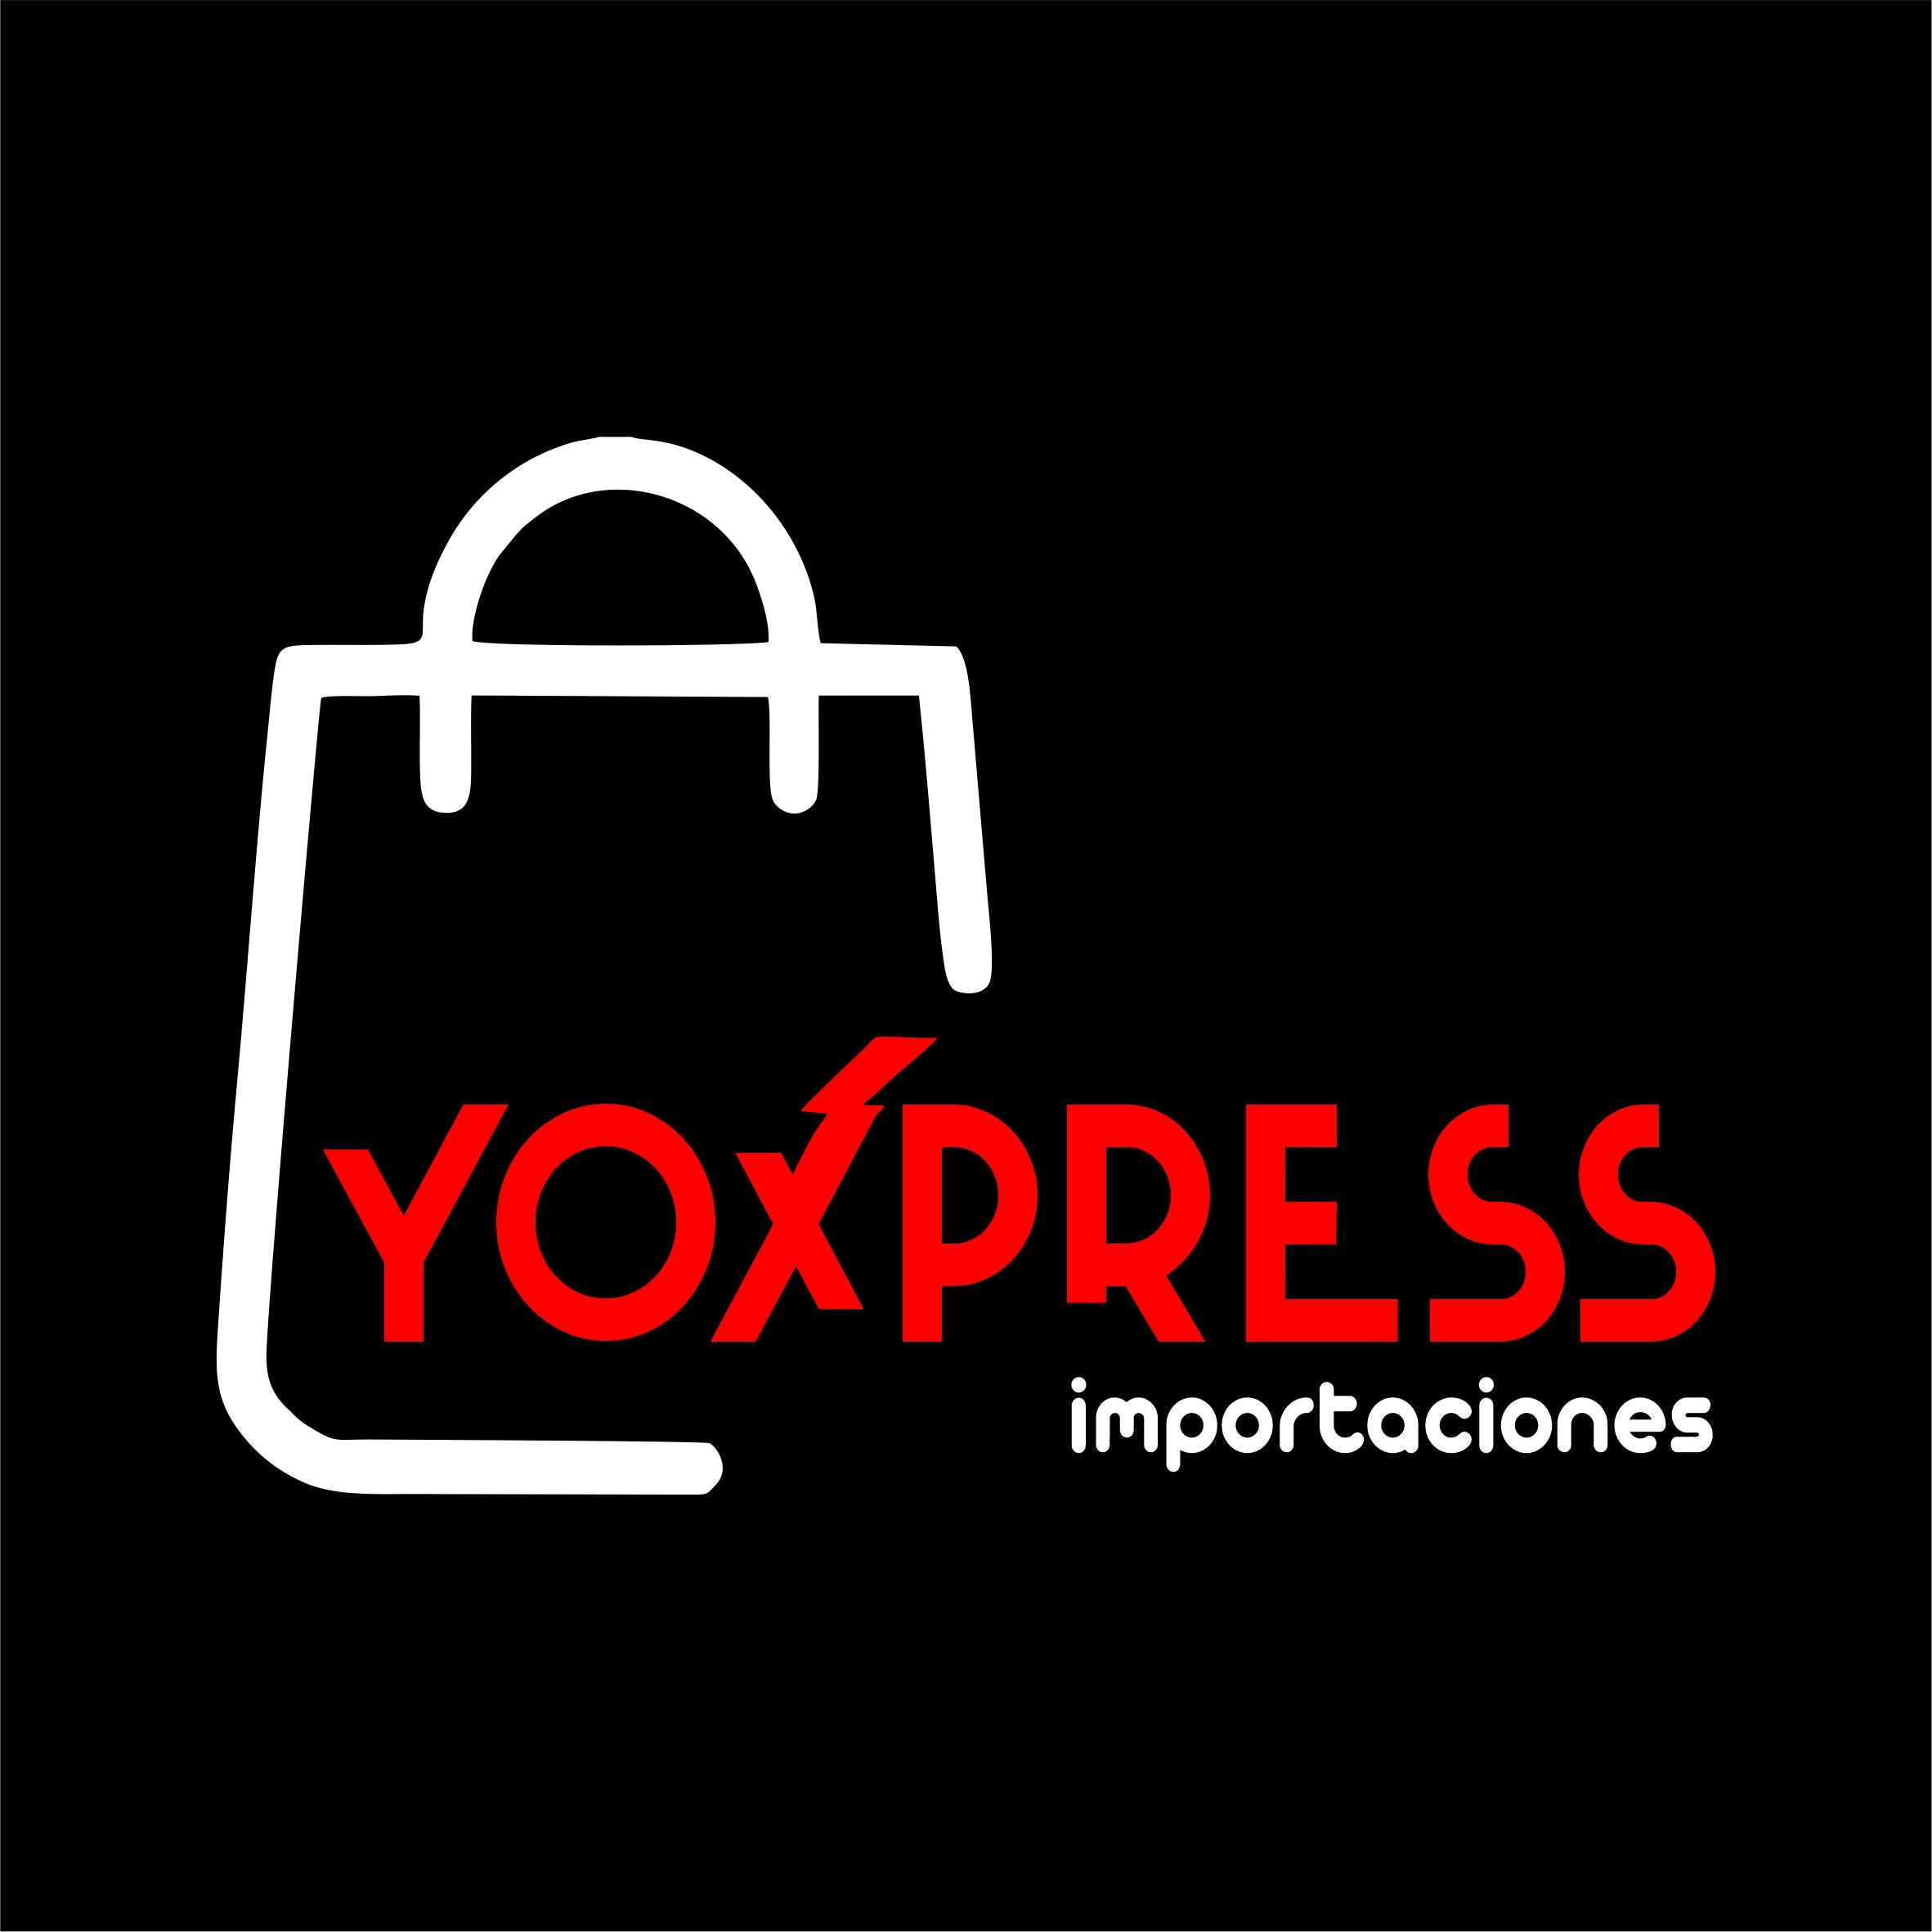 yoxprees importaciones